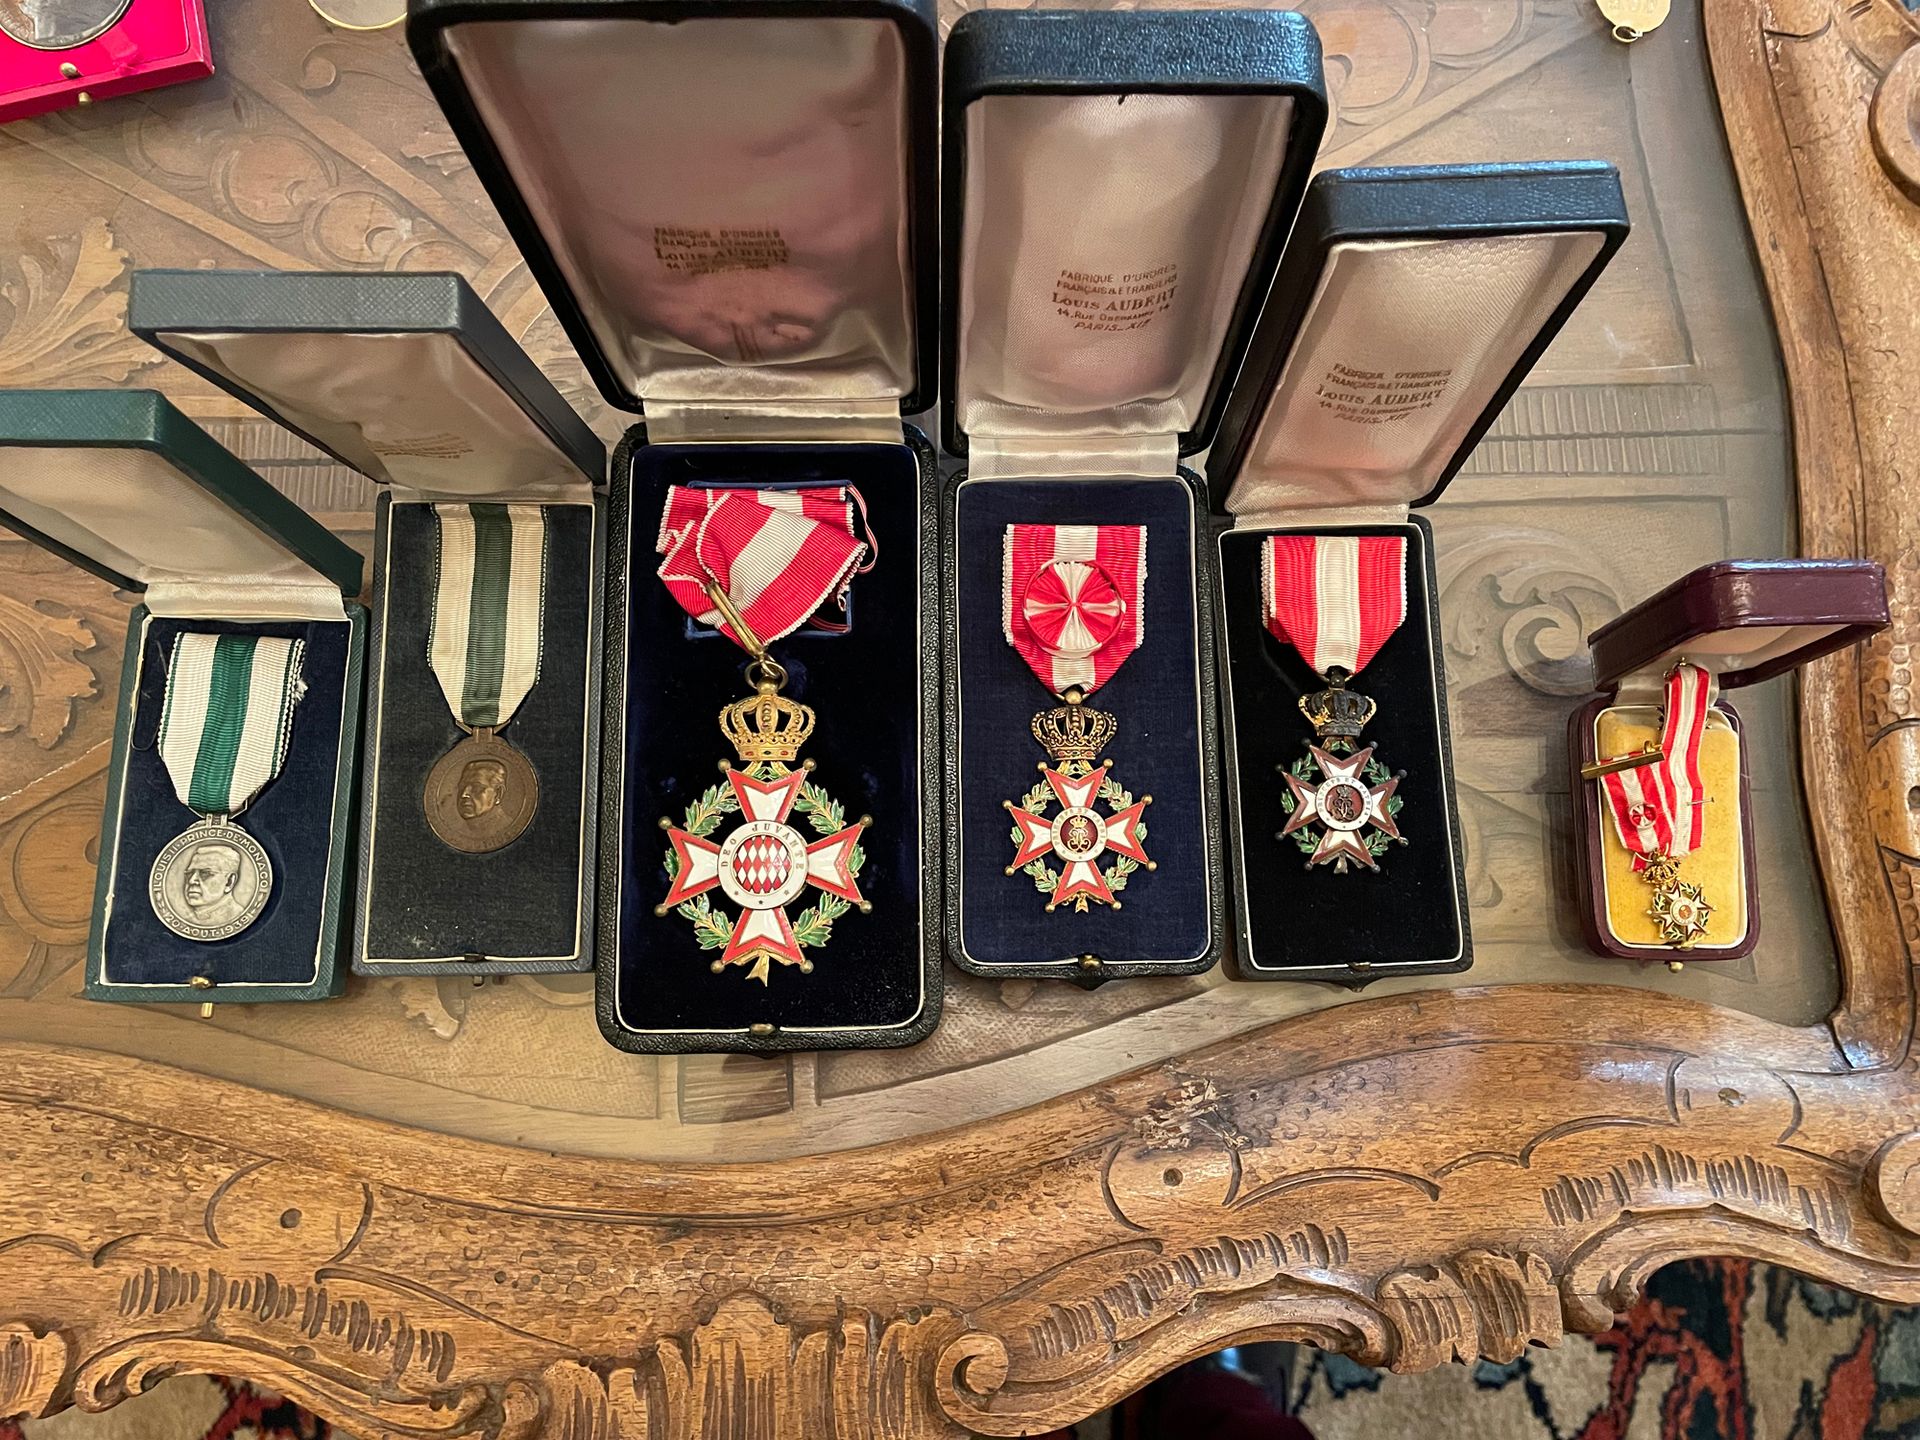 Null 一套八枚摩纳哥装饰品
圣查尔斯勋章，骑士、军官和大军官奖章
军官勋章
附有两枚缩影，其中一枚为金质，还有两枚印有路易二世亲王肖像的体育奖章